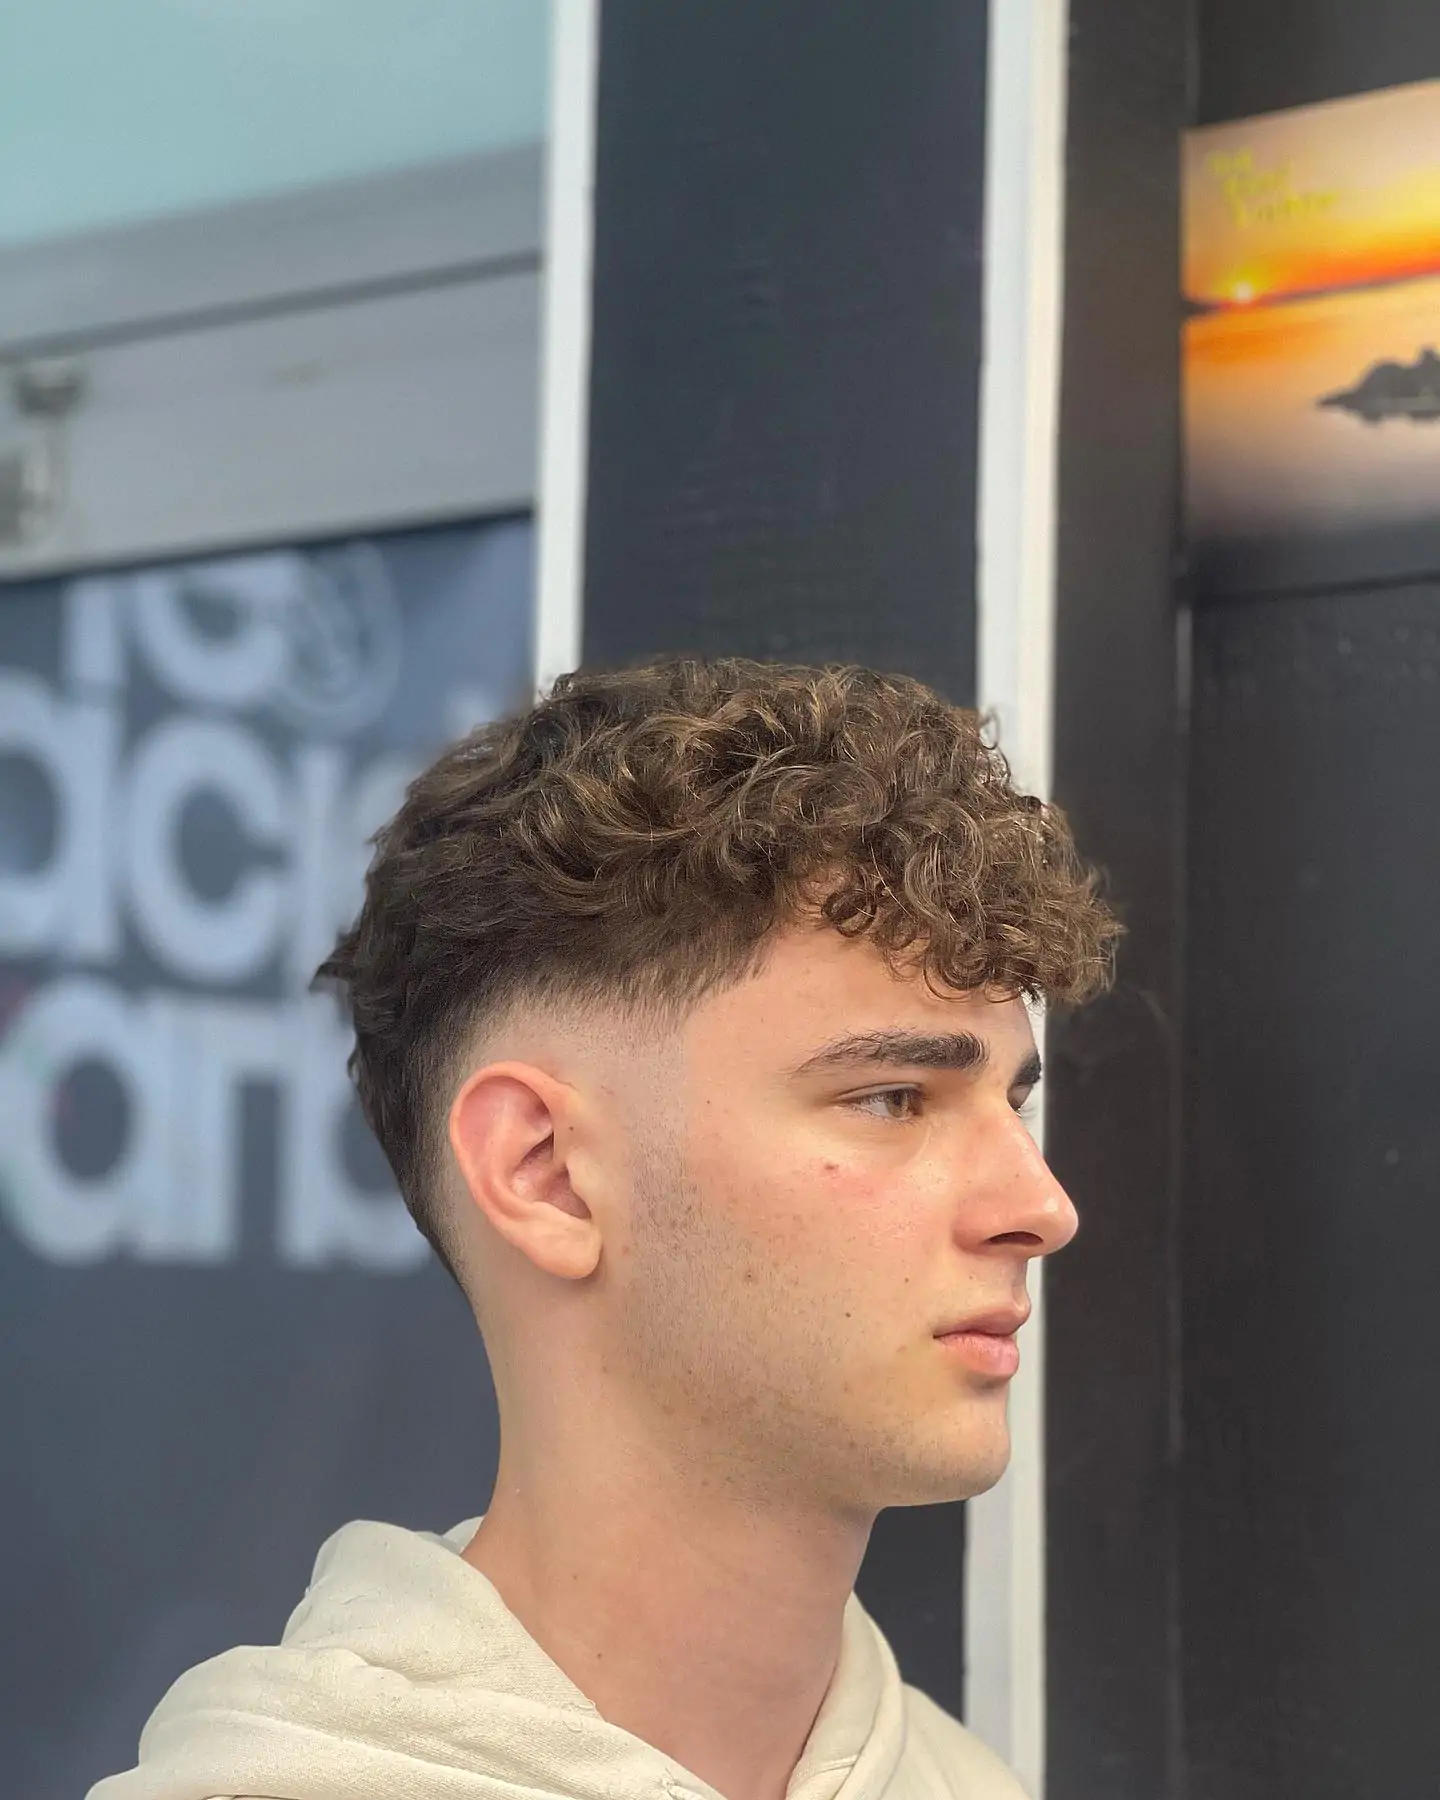 Edgar Haircut With Waves